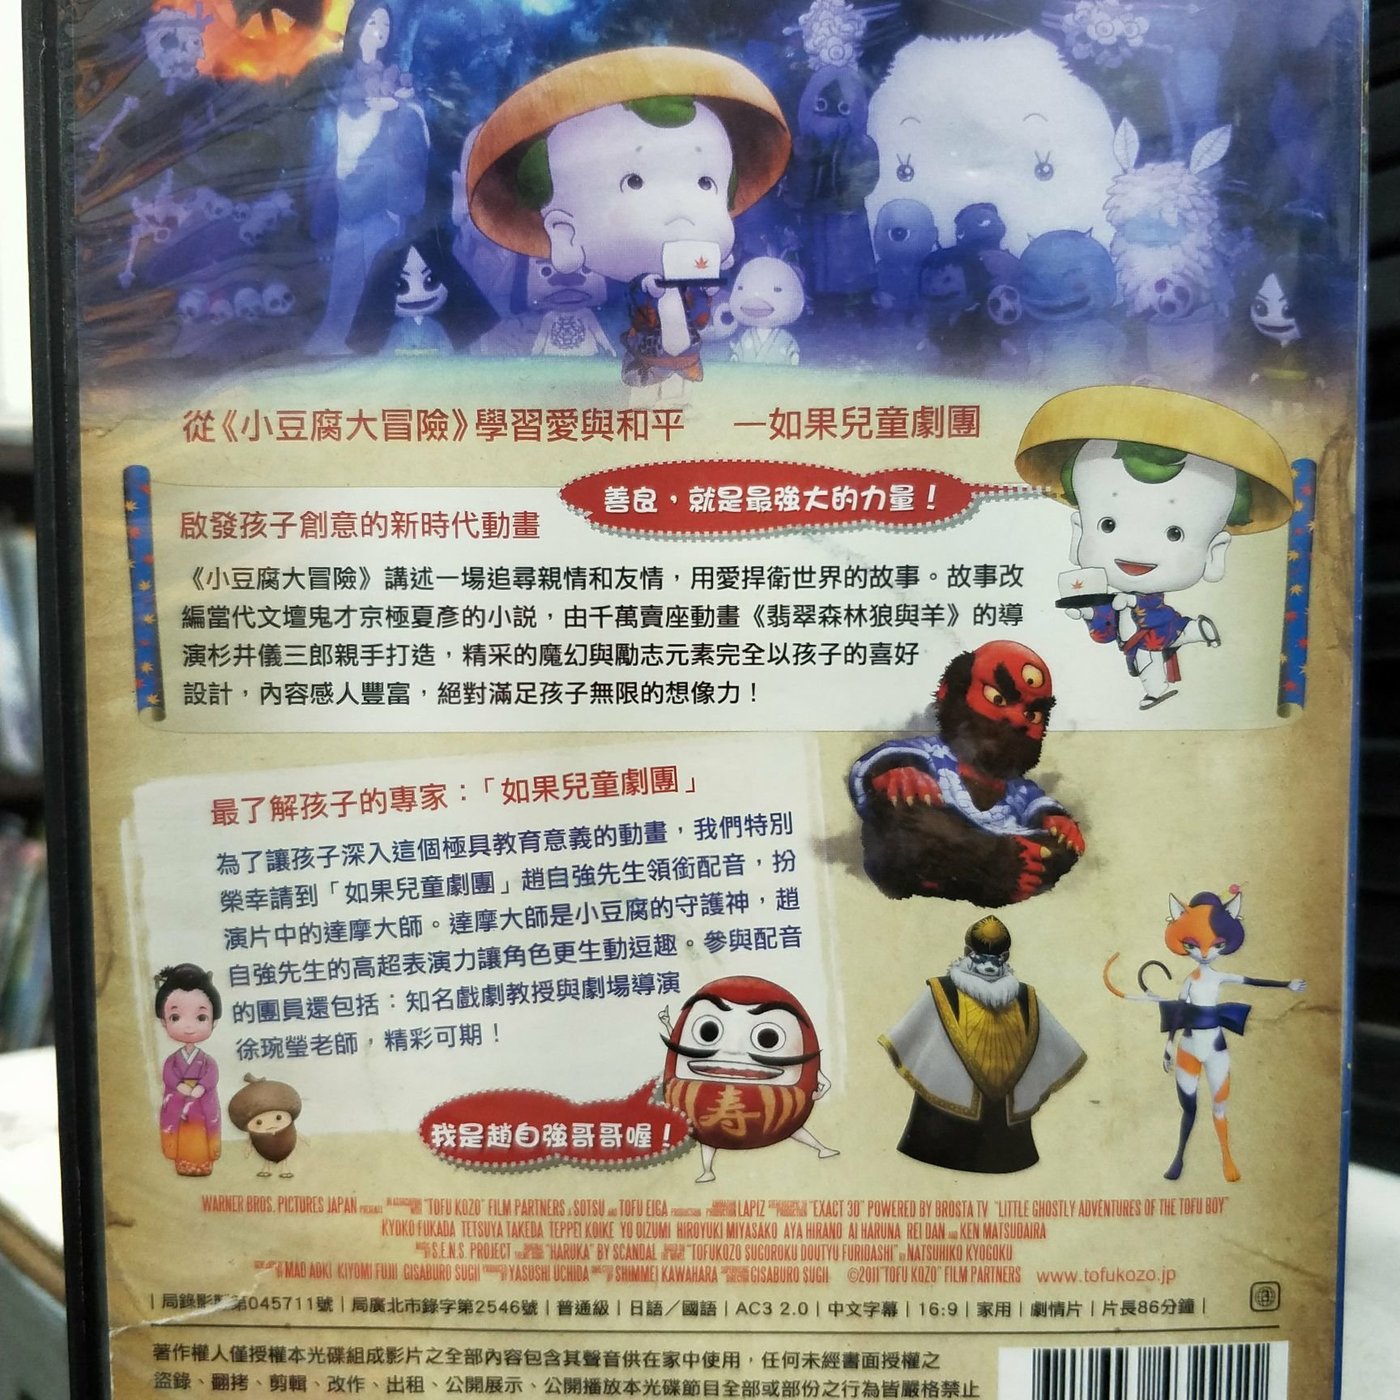 挖寶二手片-Y20-100-正版DVD-動畫【小豆腐大冒險】-國日語發音(直購價 